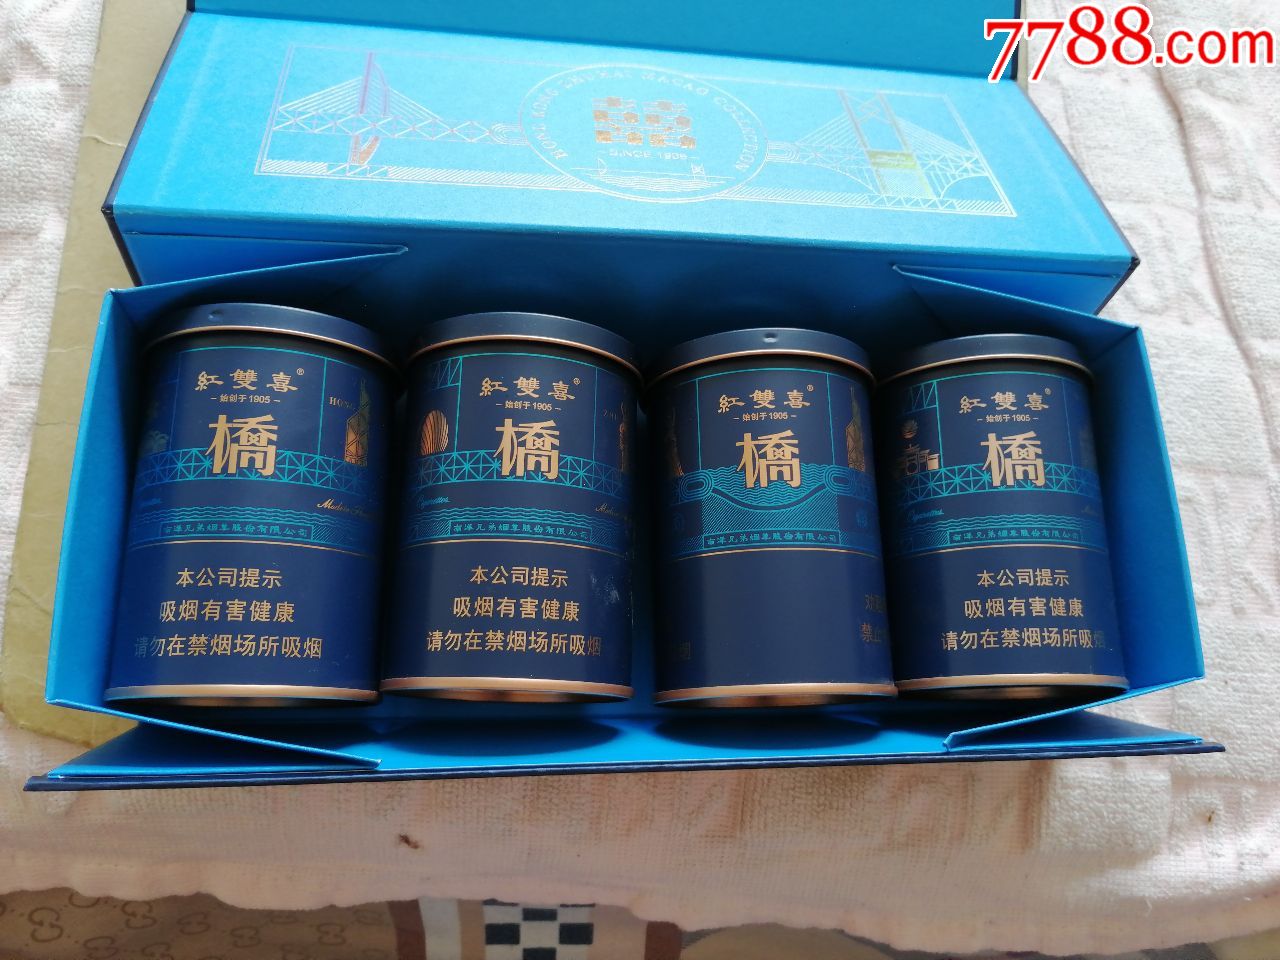 港澳珠桥南洋兄弟烟草股份有限公司香港制造四盒合拍